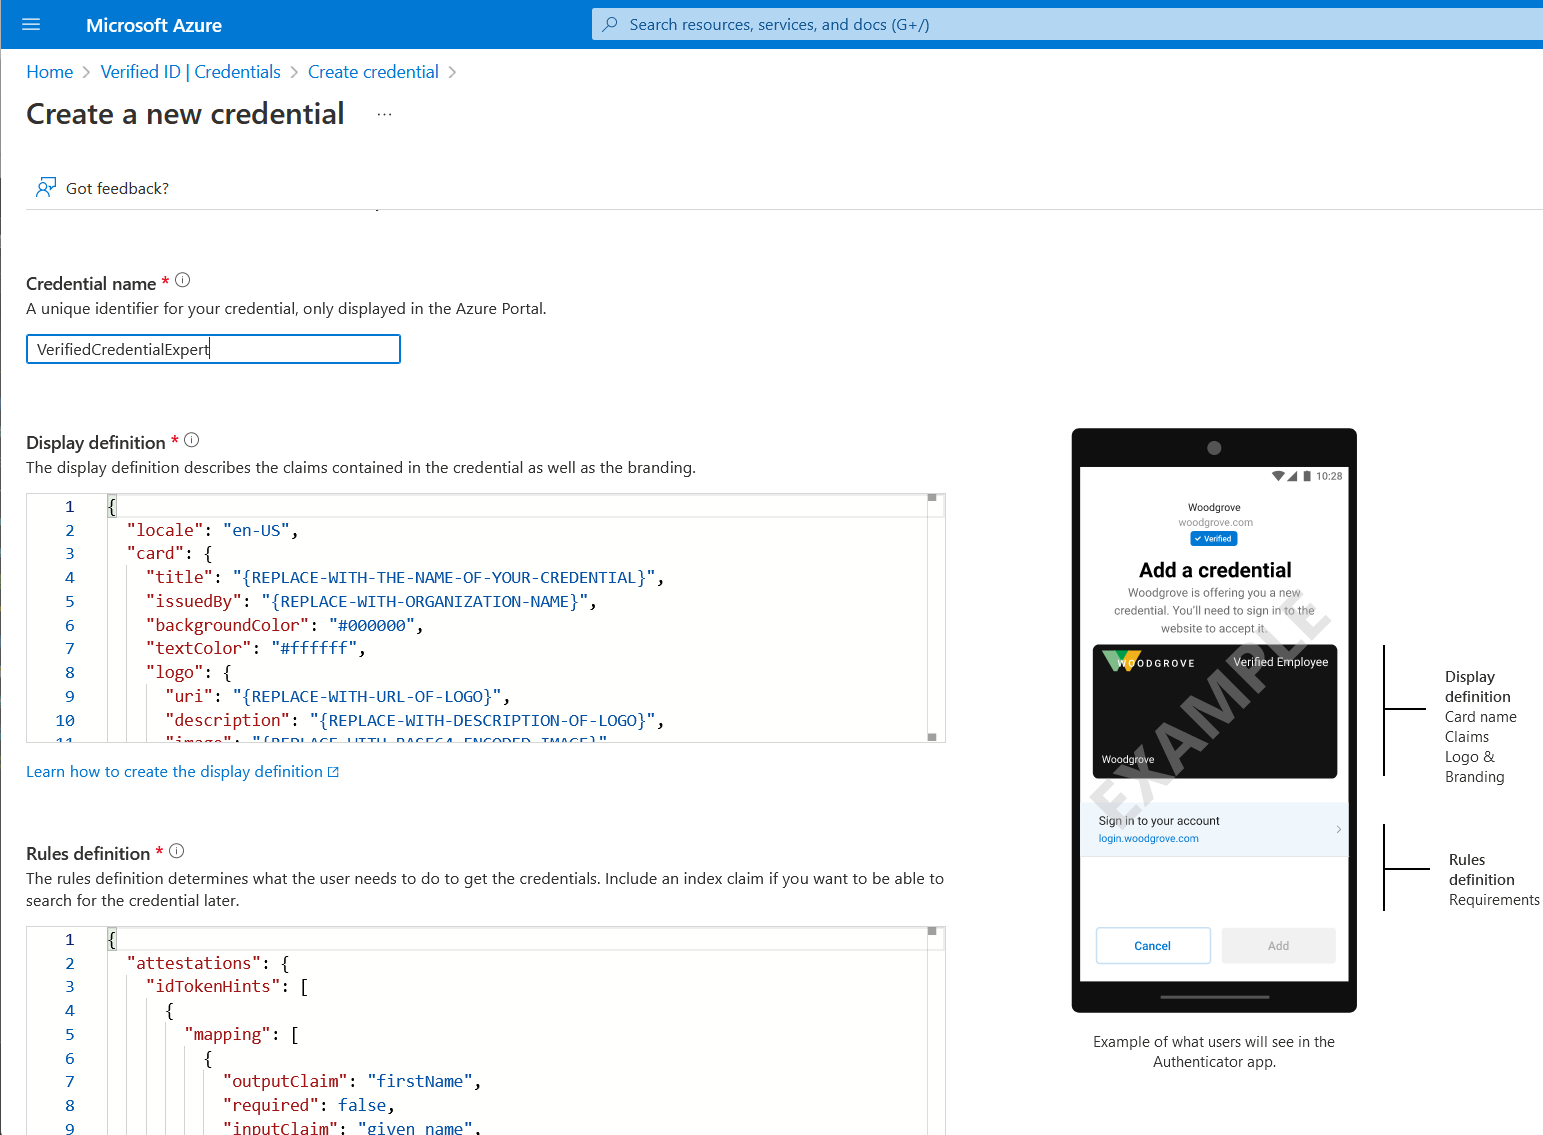 Captura de pantalla de la página de creación de credenciales, en la que se muestran ejemplos de JSON para los archivos de visualización y reglas.